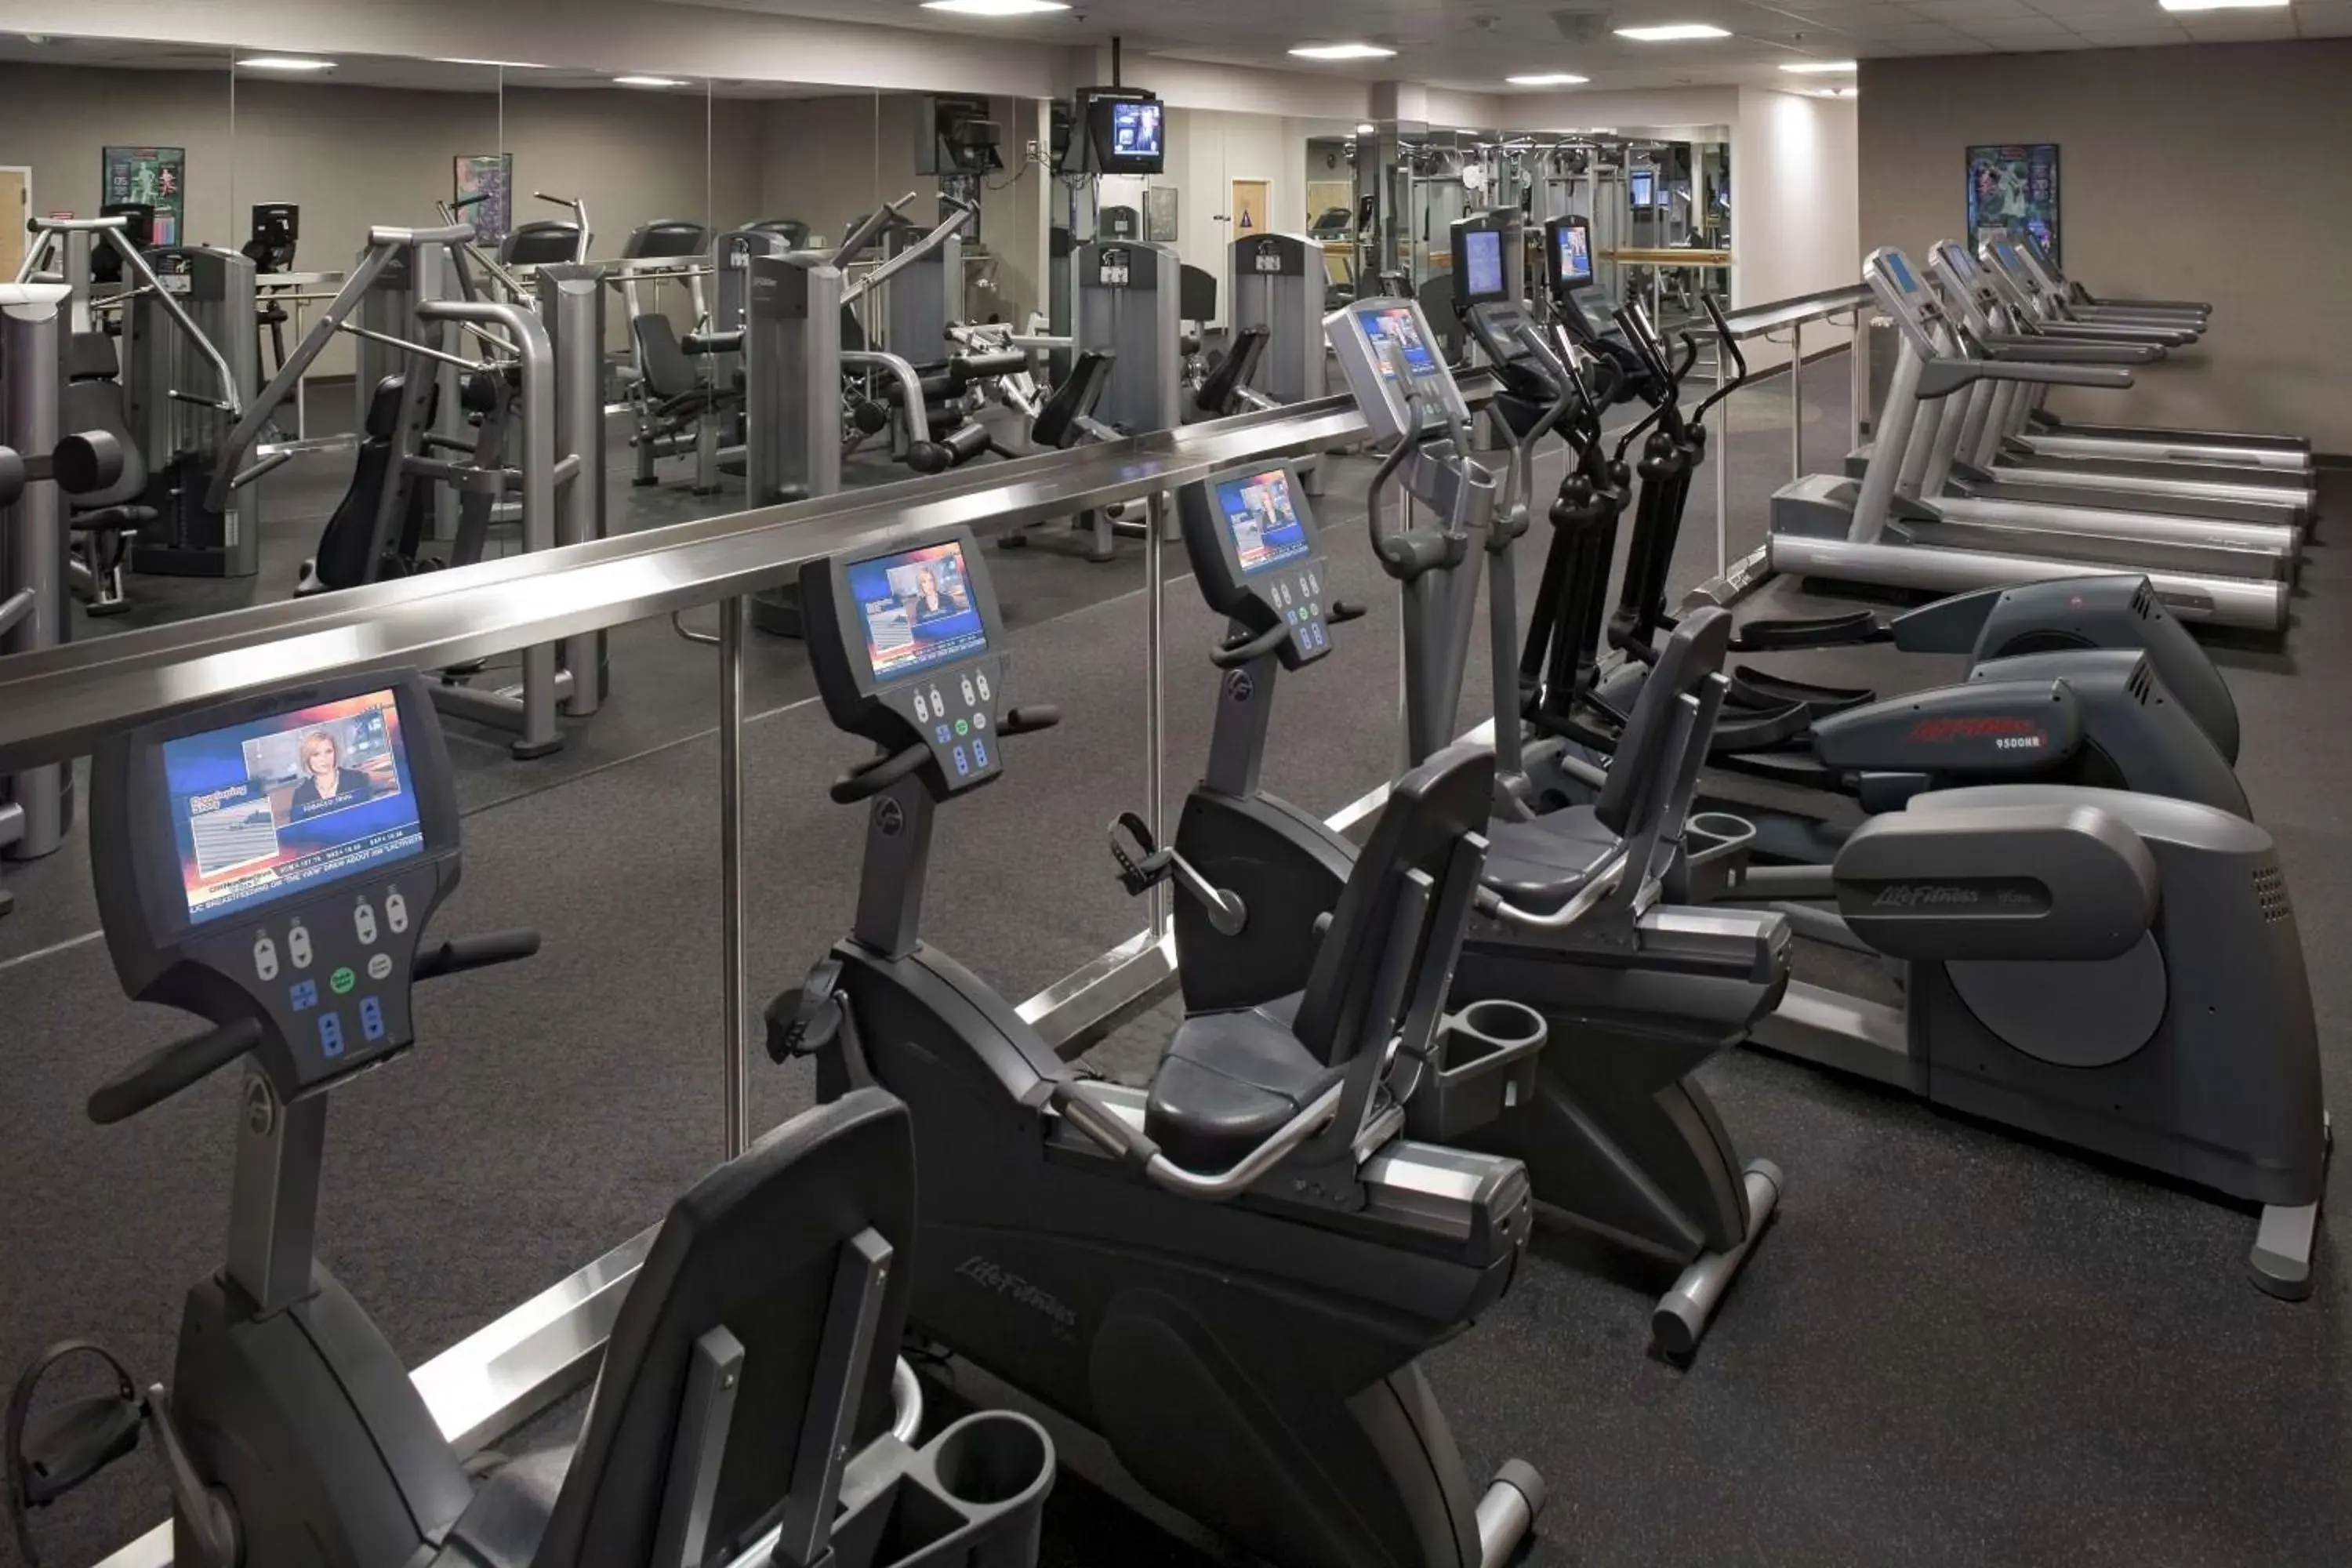 Fitness centre/facilities, Fitness Center/Facilities in Hyatt Regency Sacramento